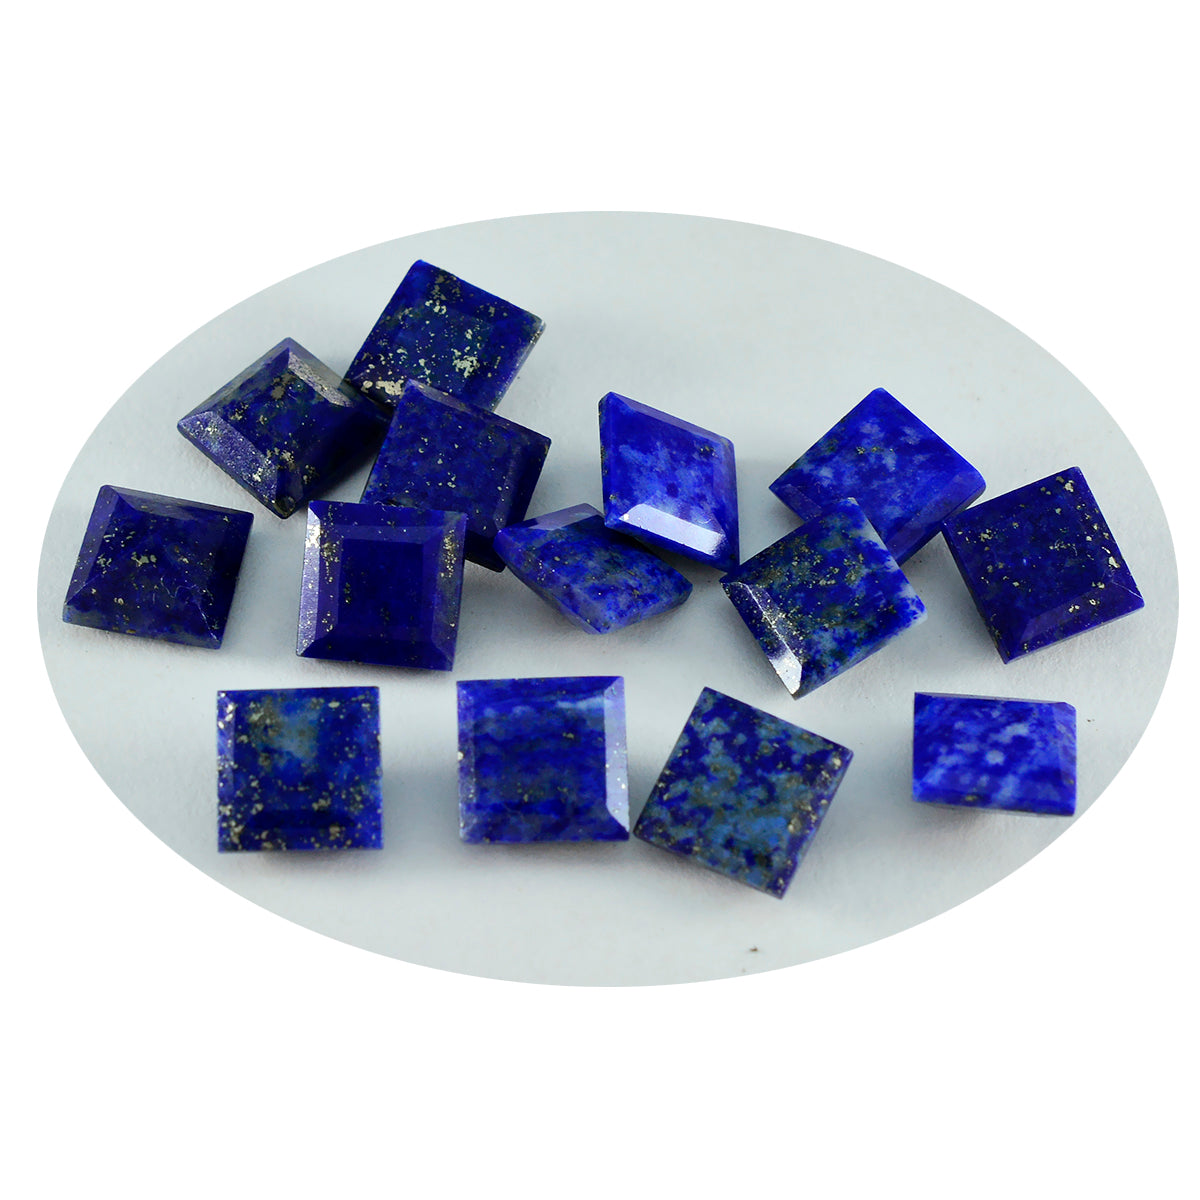 Riyogems 1PC Echte Blauwe Lapis Lazuli Facet 7x7 mm Vierkante Vorm Uitstekende Kwaliteit Edelstenen